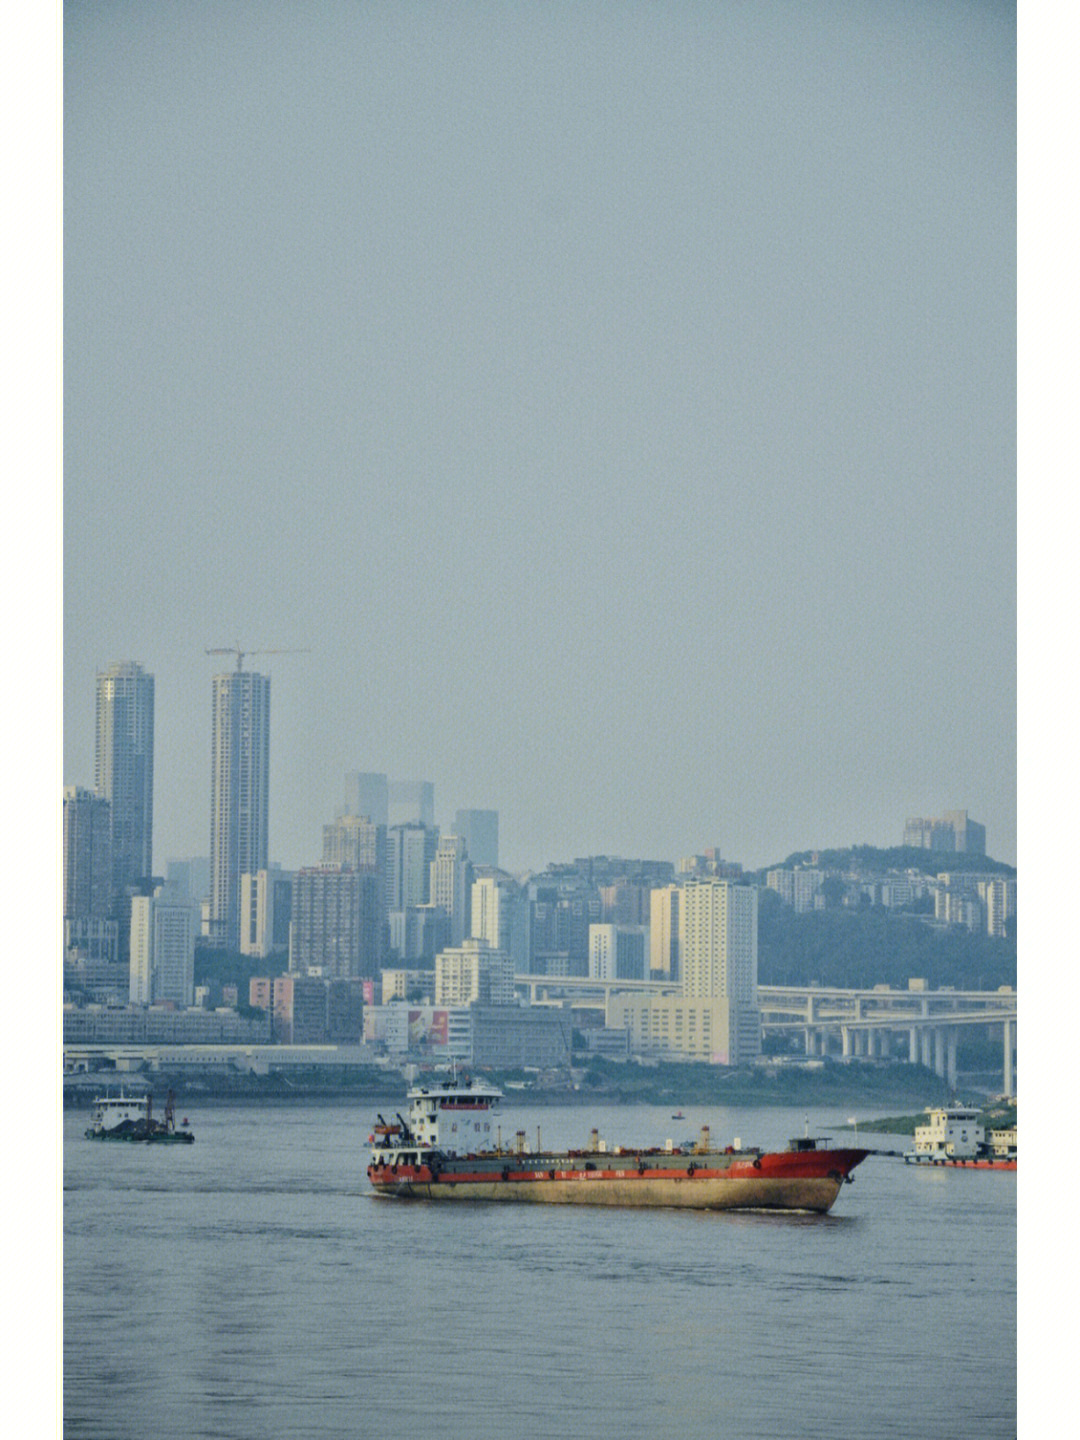 重庆九龙滩在江边才能等来一艘船